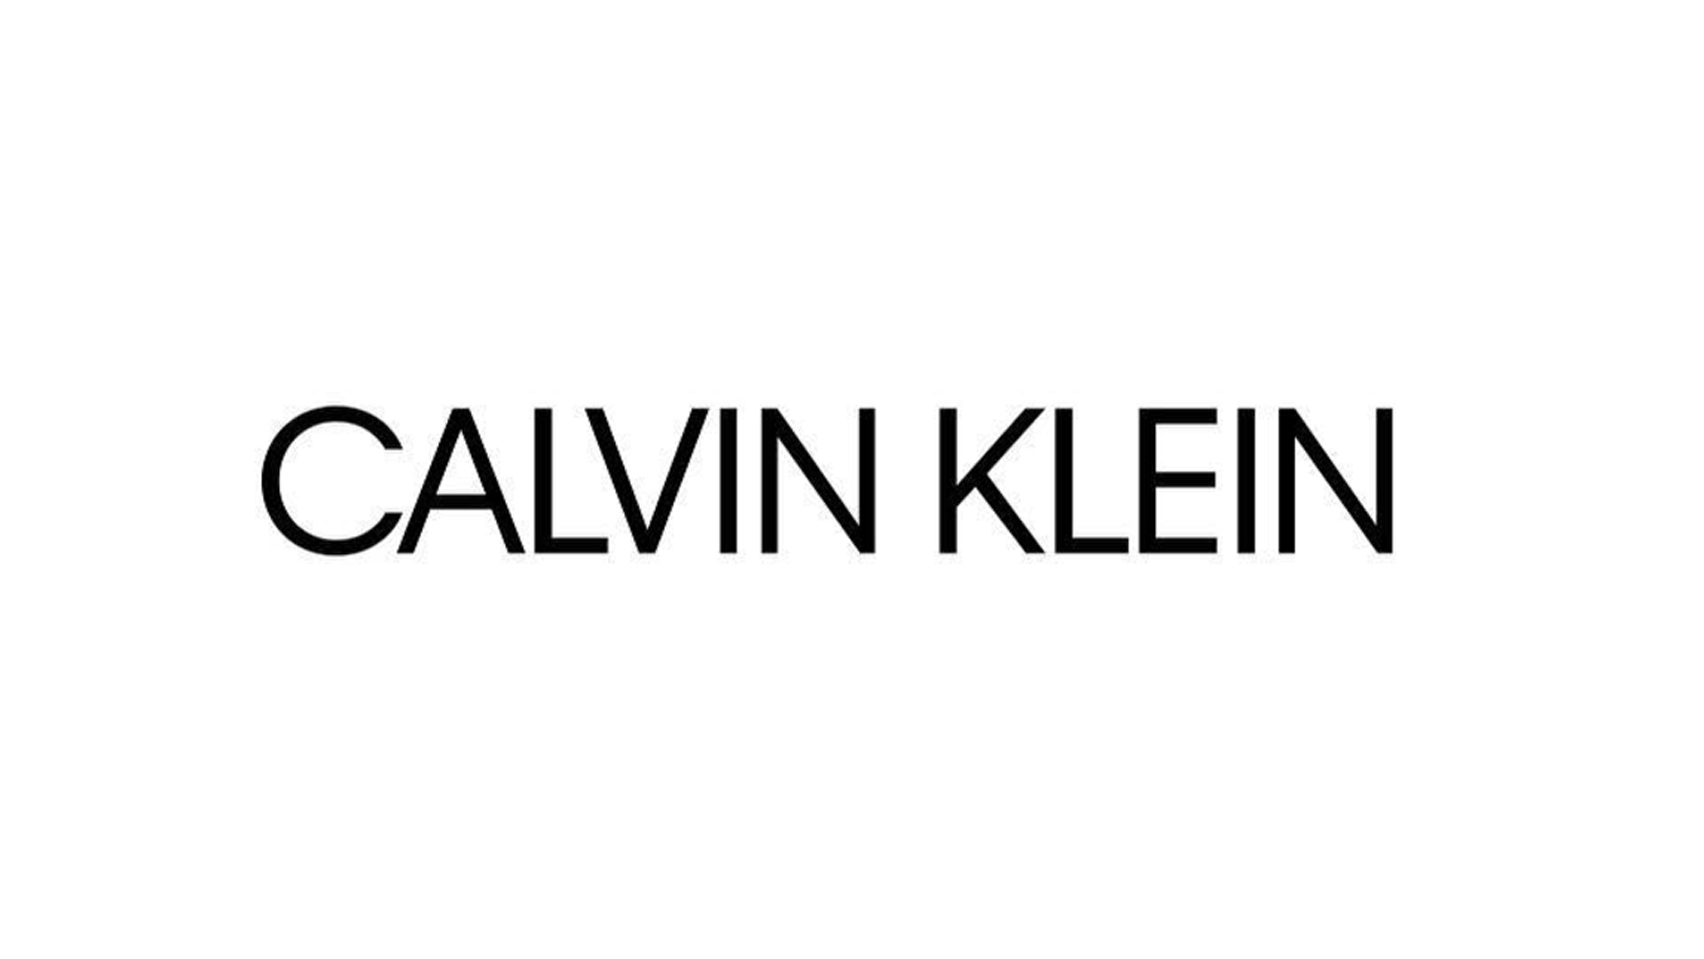 Wyrzuć swoją bieliznę. Calvin Klein ma nowe logo Calvin Klein mediarun calvin klein logo 2017